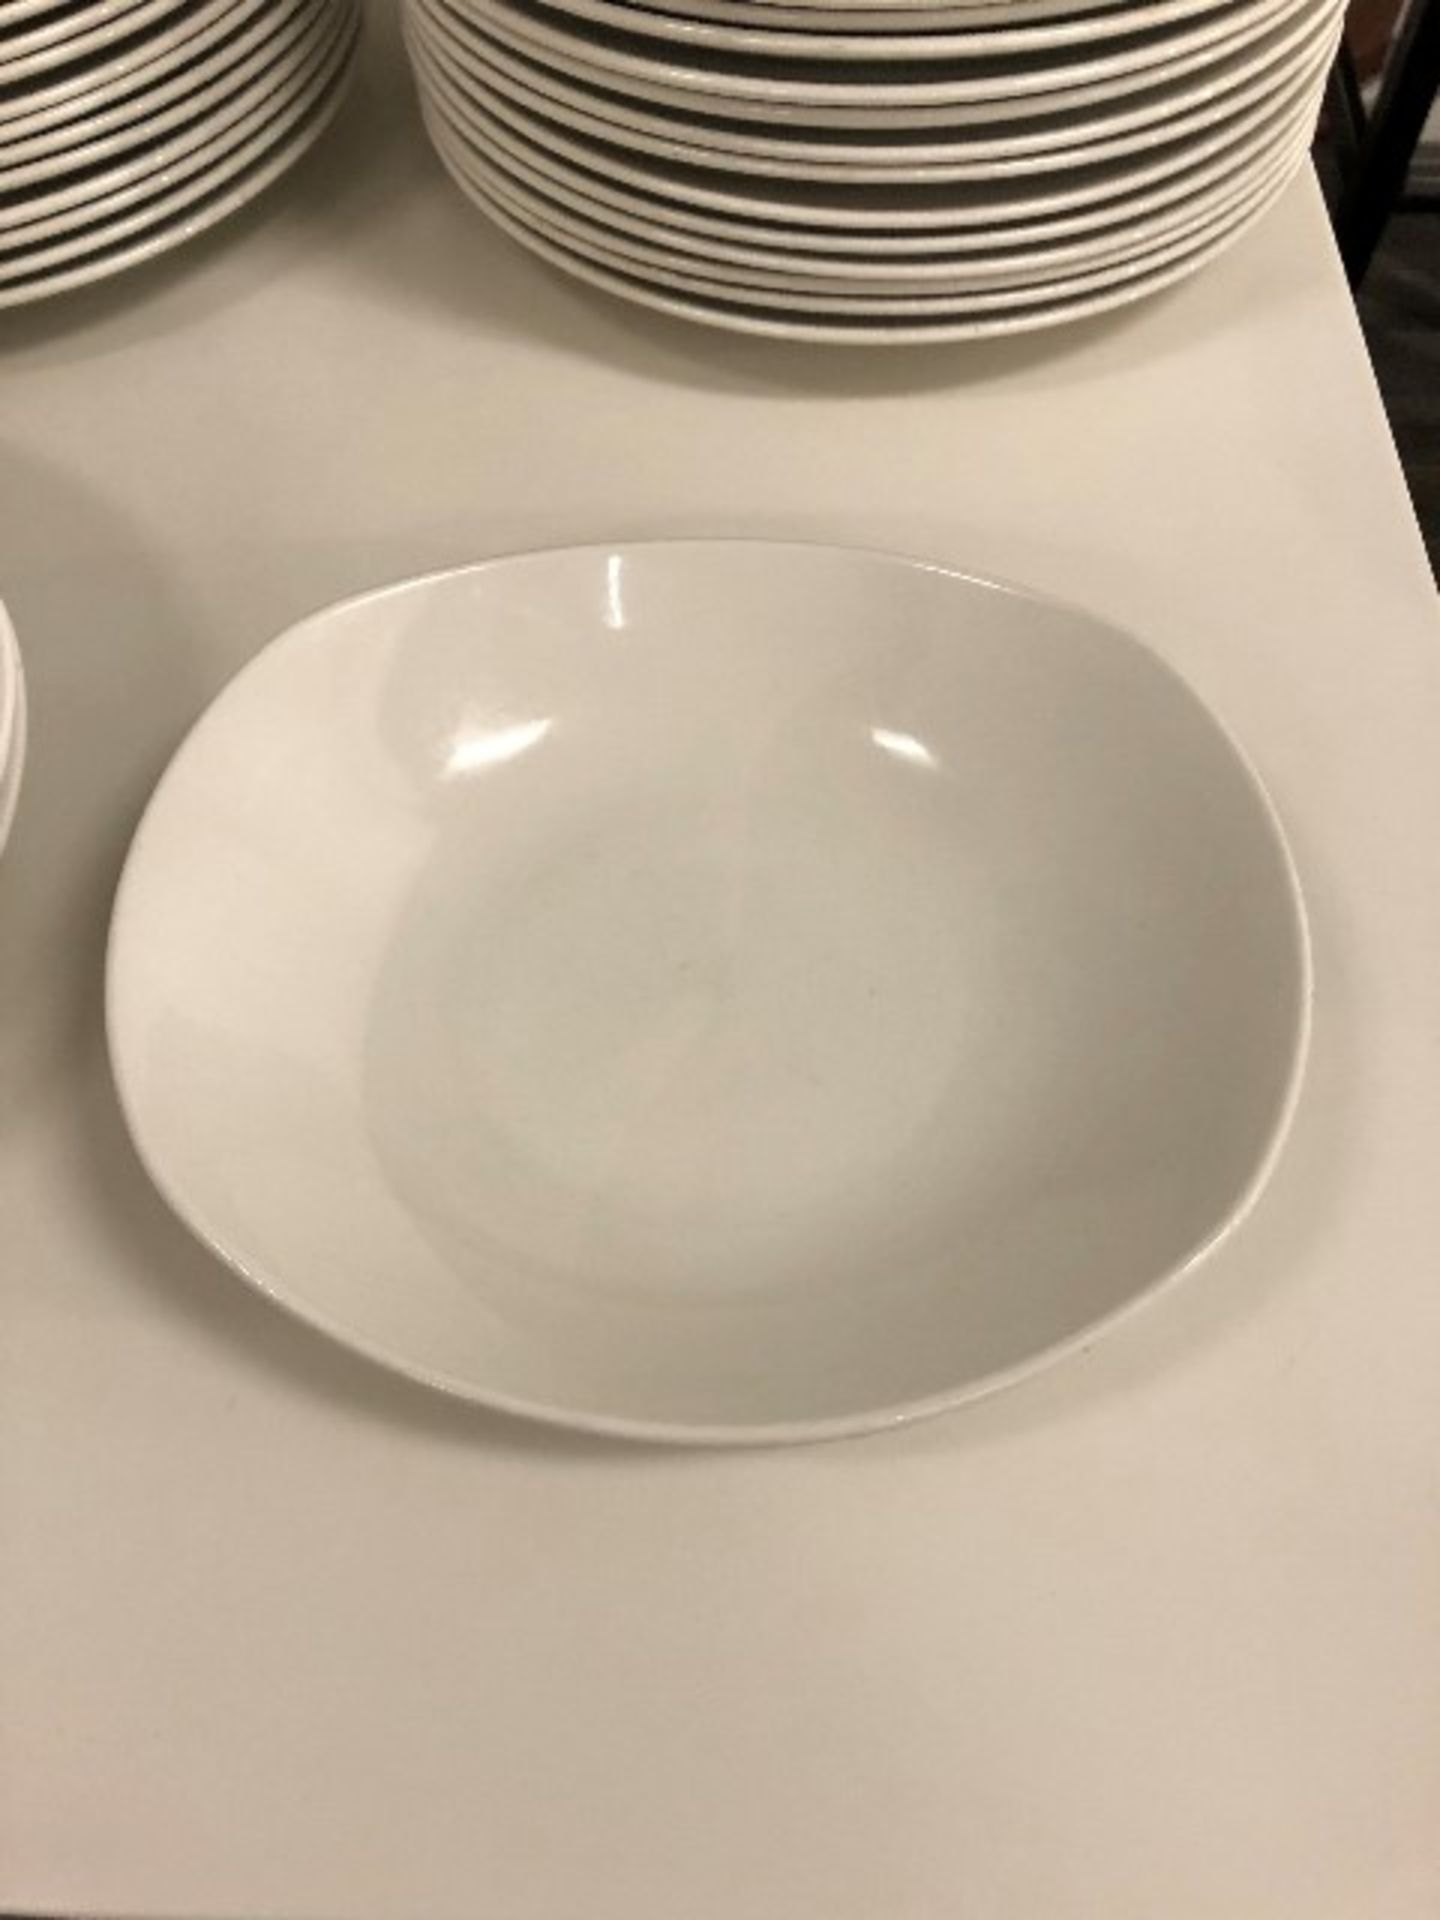 Bowl plates, 10”x9”, 20 pcs (Lot) - Image 2 of 2